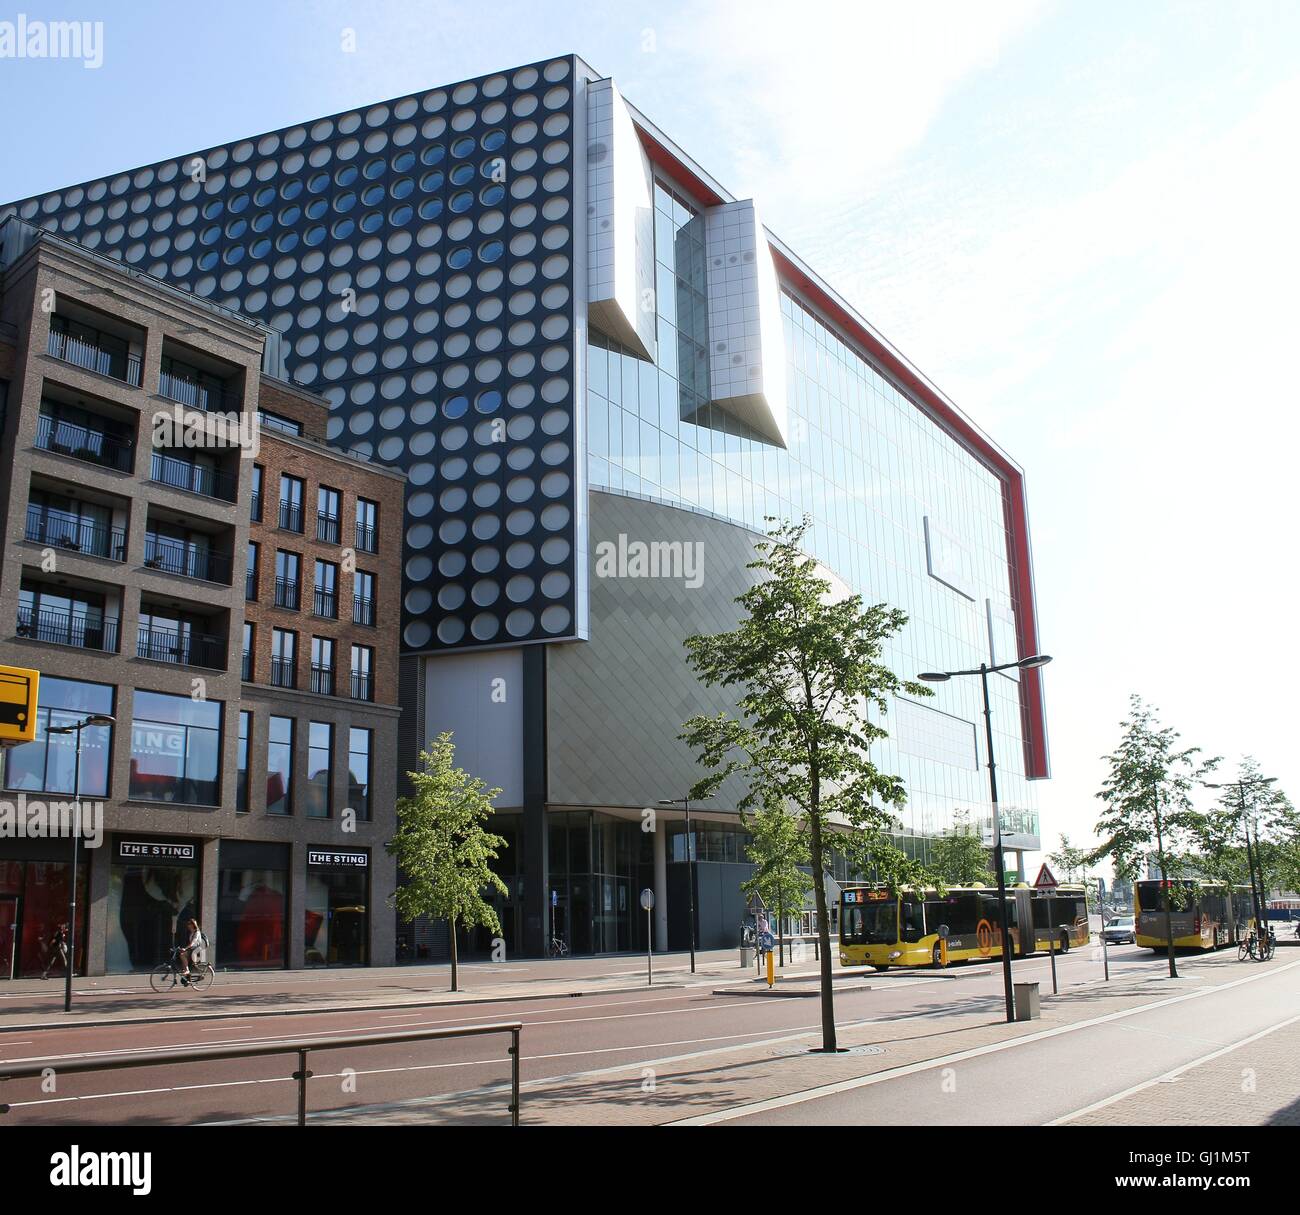 TivoliVredenburg complexe musique contemporaine à Utrecht, Pays-Bas (été 2015) - Croix de 2 images Banque D'Images